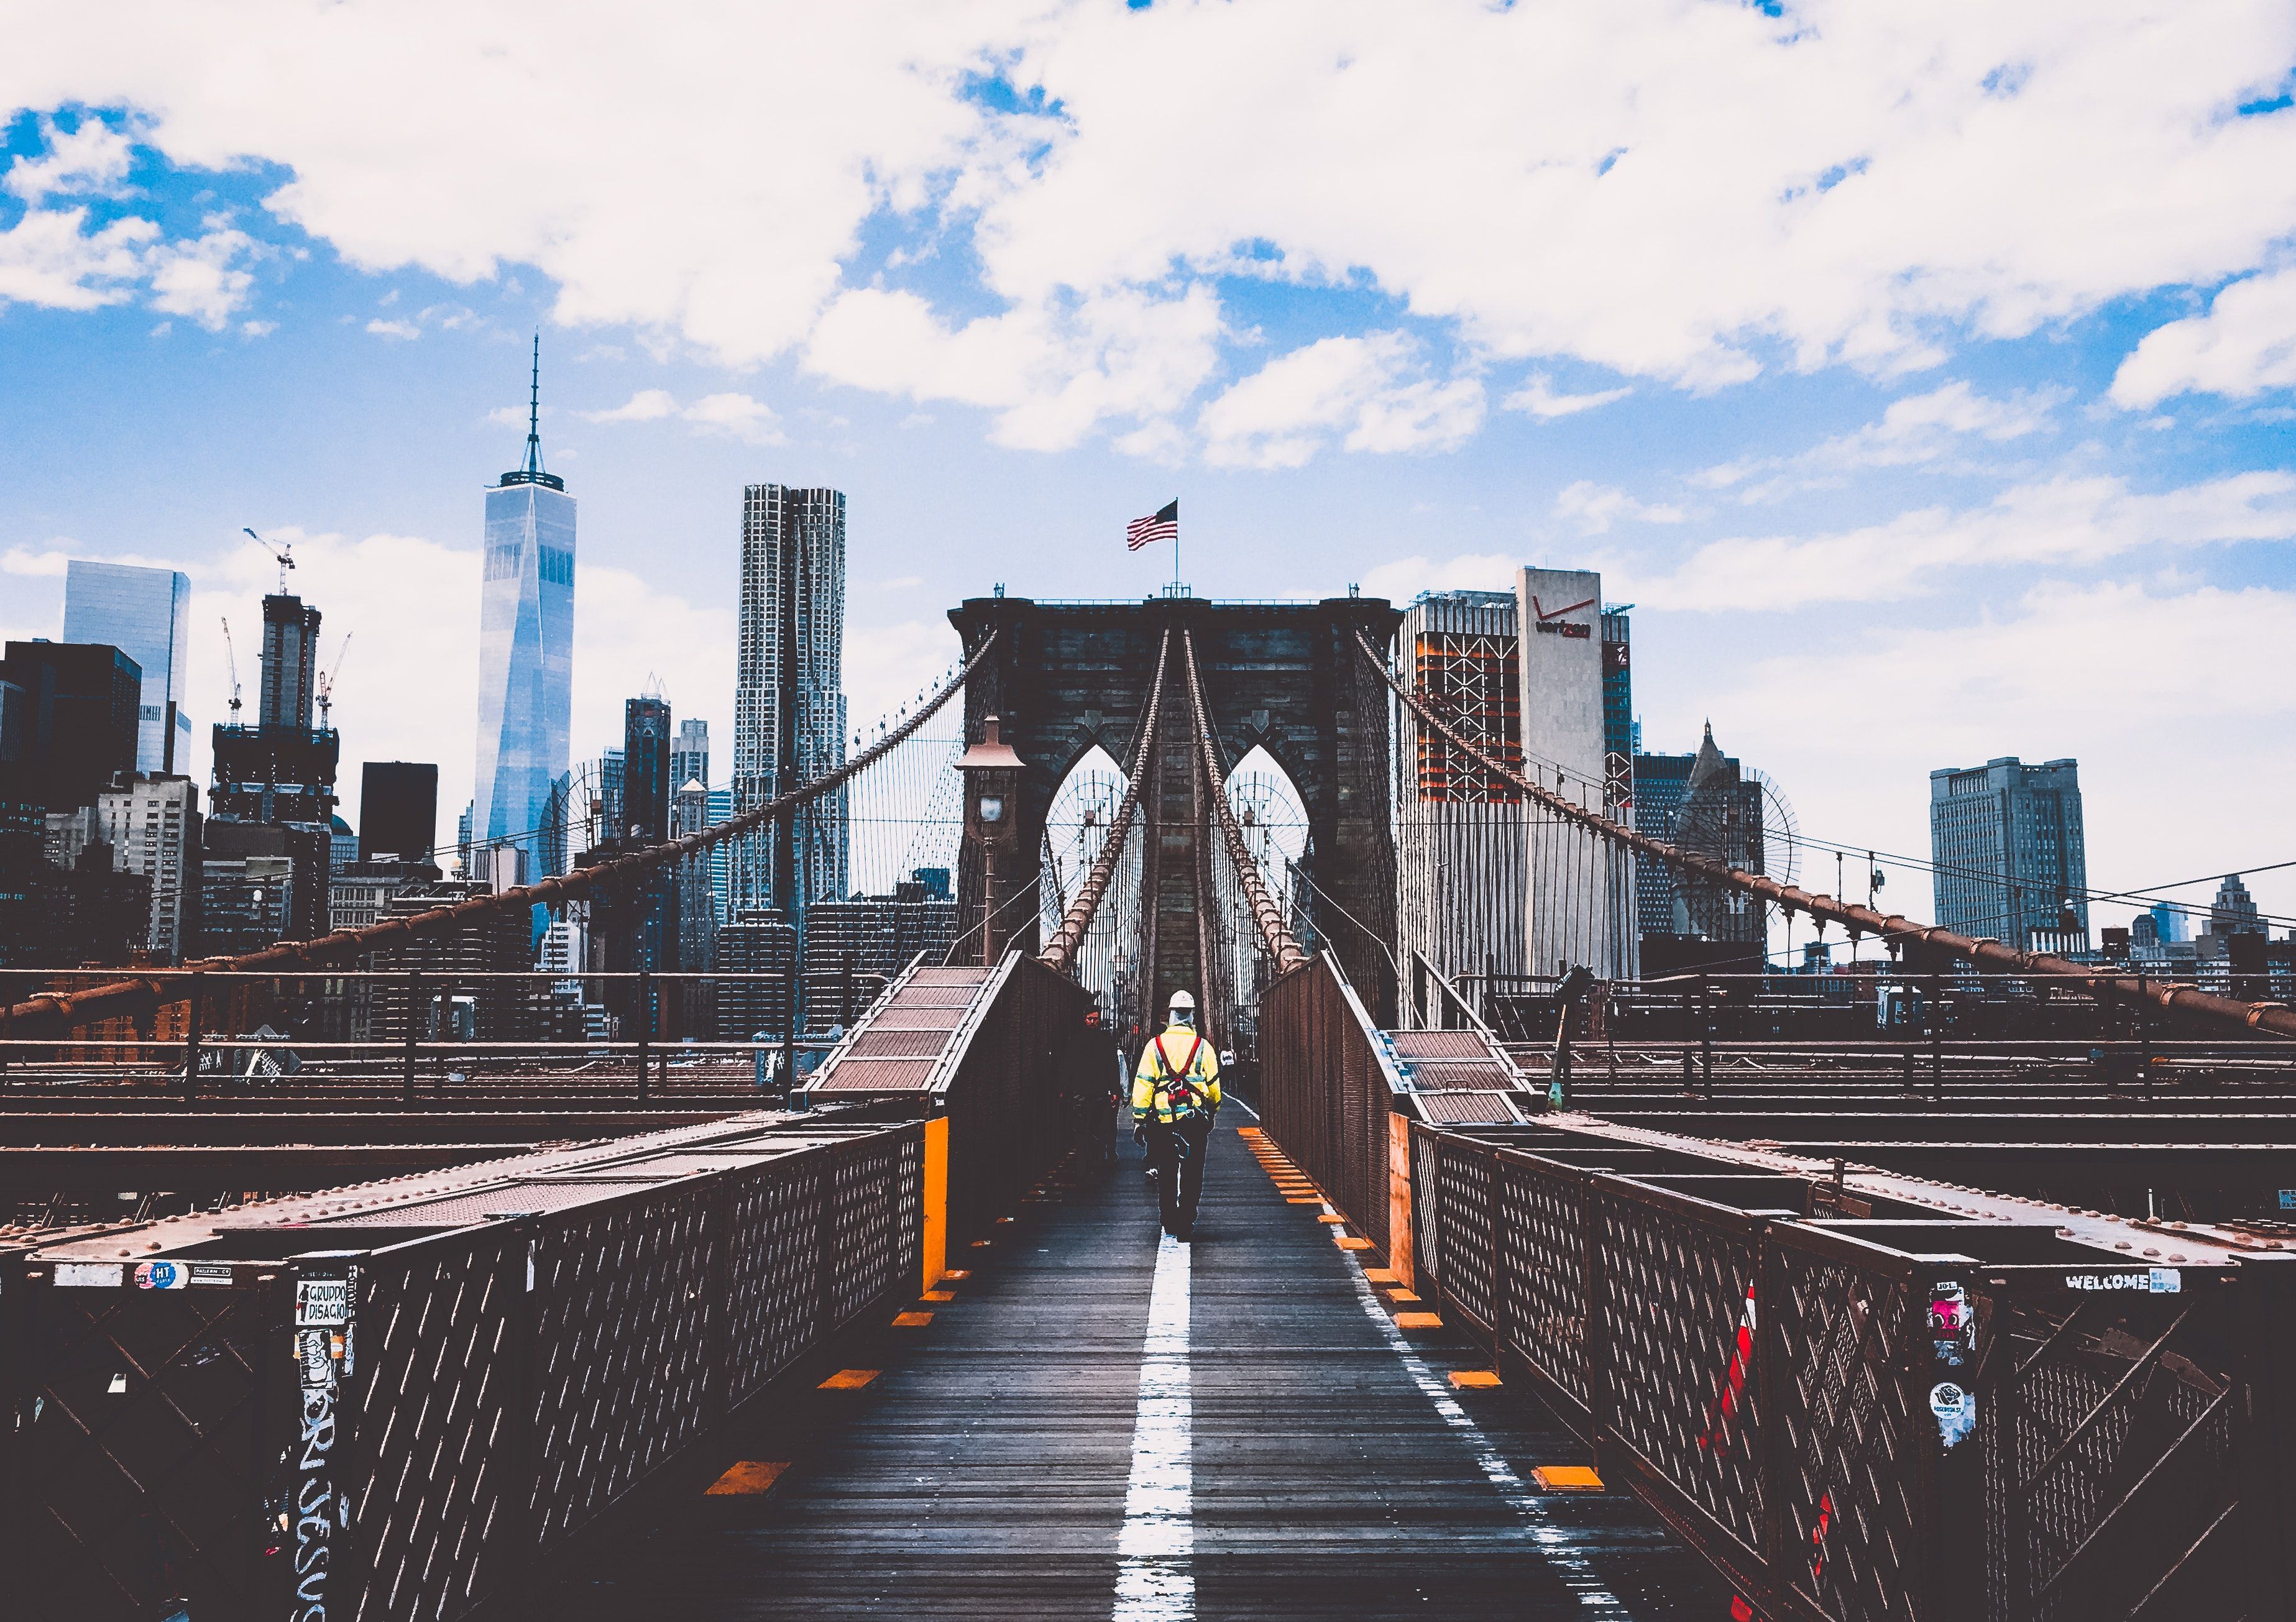 Fondos de la ciudad de Nueva York - Los mejores fondos gratis de la ciudad de Nueva York